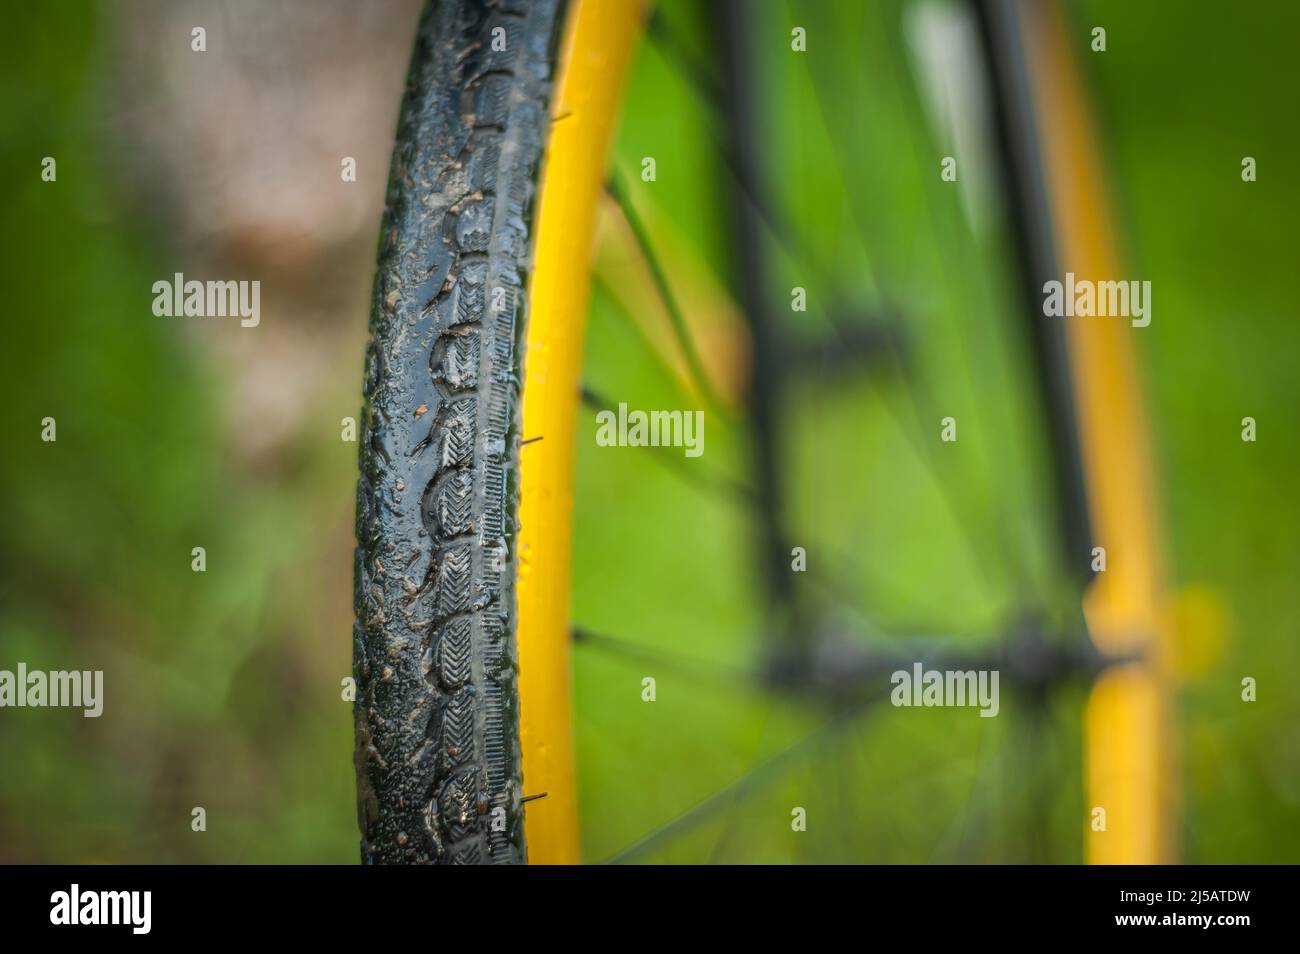 Photo d'une partie de vélo, gros plan. En plein air, la roue et la bande de roulement sont clairement visibles. Banque D'Images